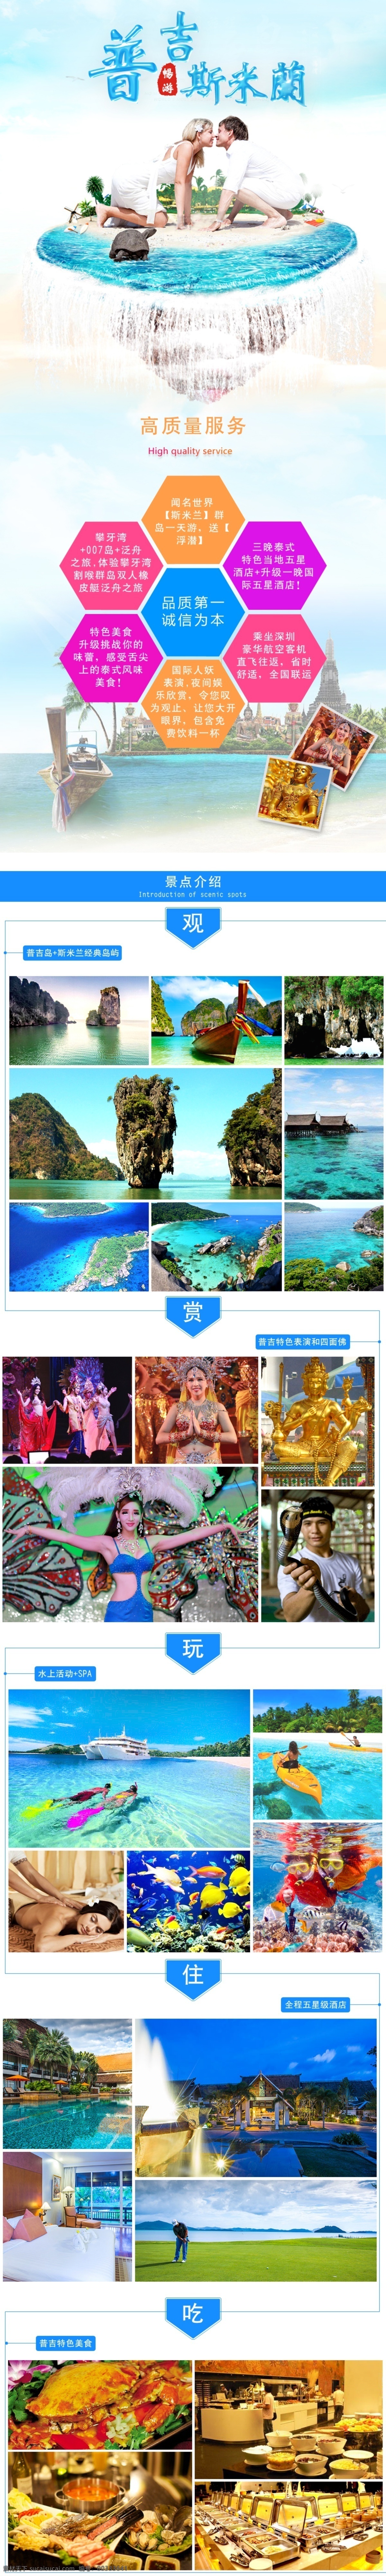 普吉 斯 米兰 团 游 出国游幽梦轩 泰国旅游 海岛跟团游 普吉岛旅游 斯米兰旅游